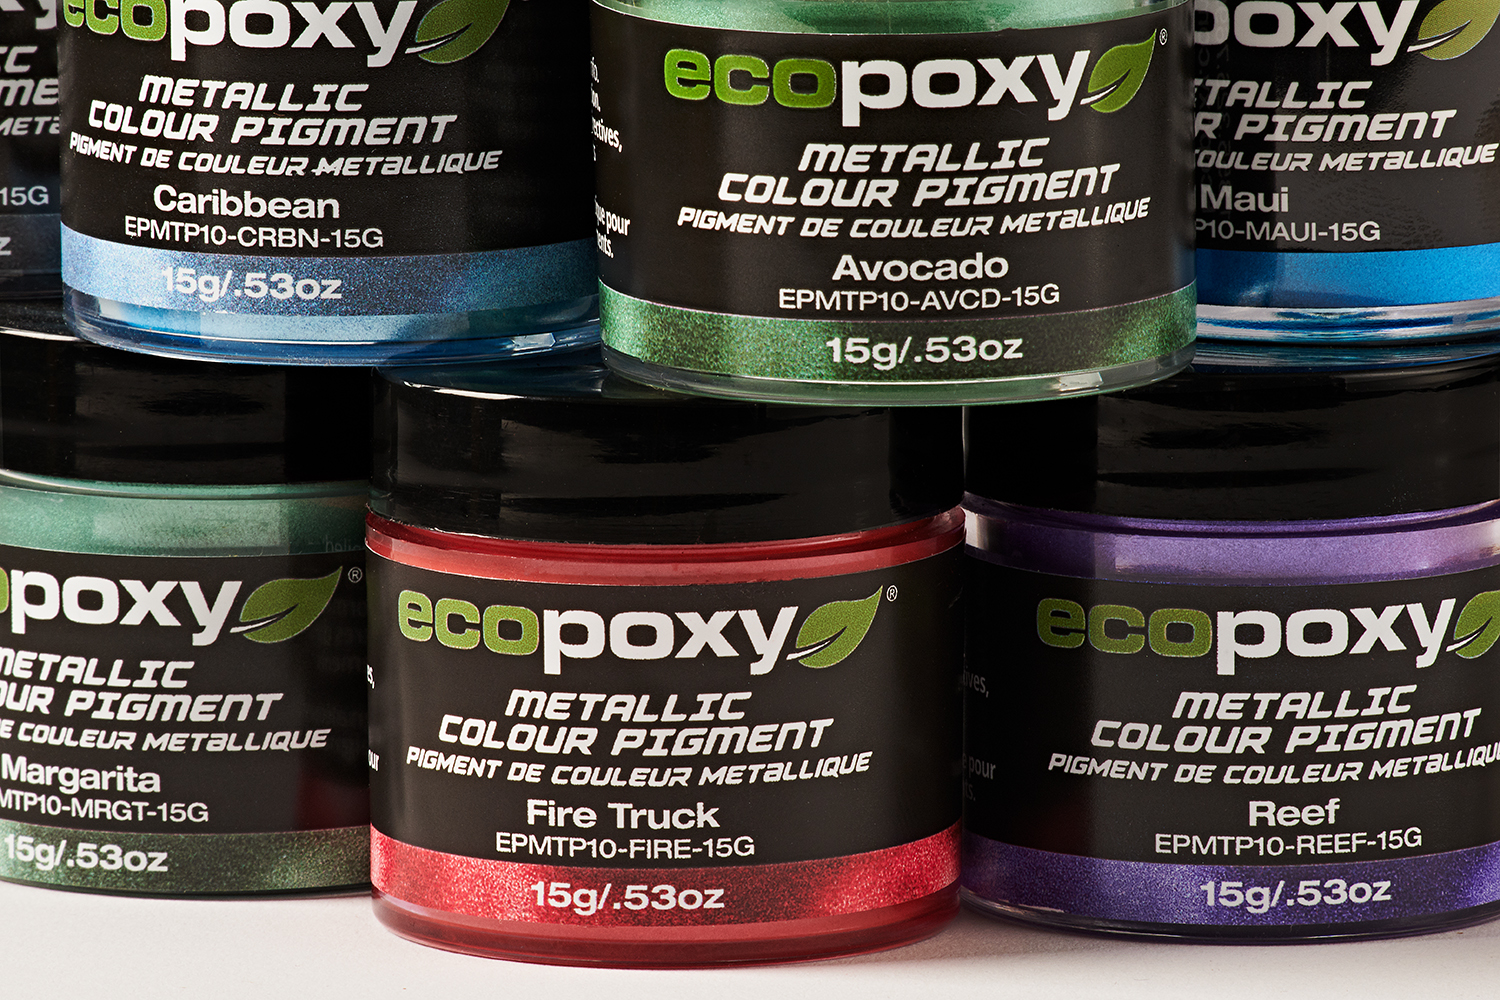 EcoPoxy Metallic Color Pigment